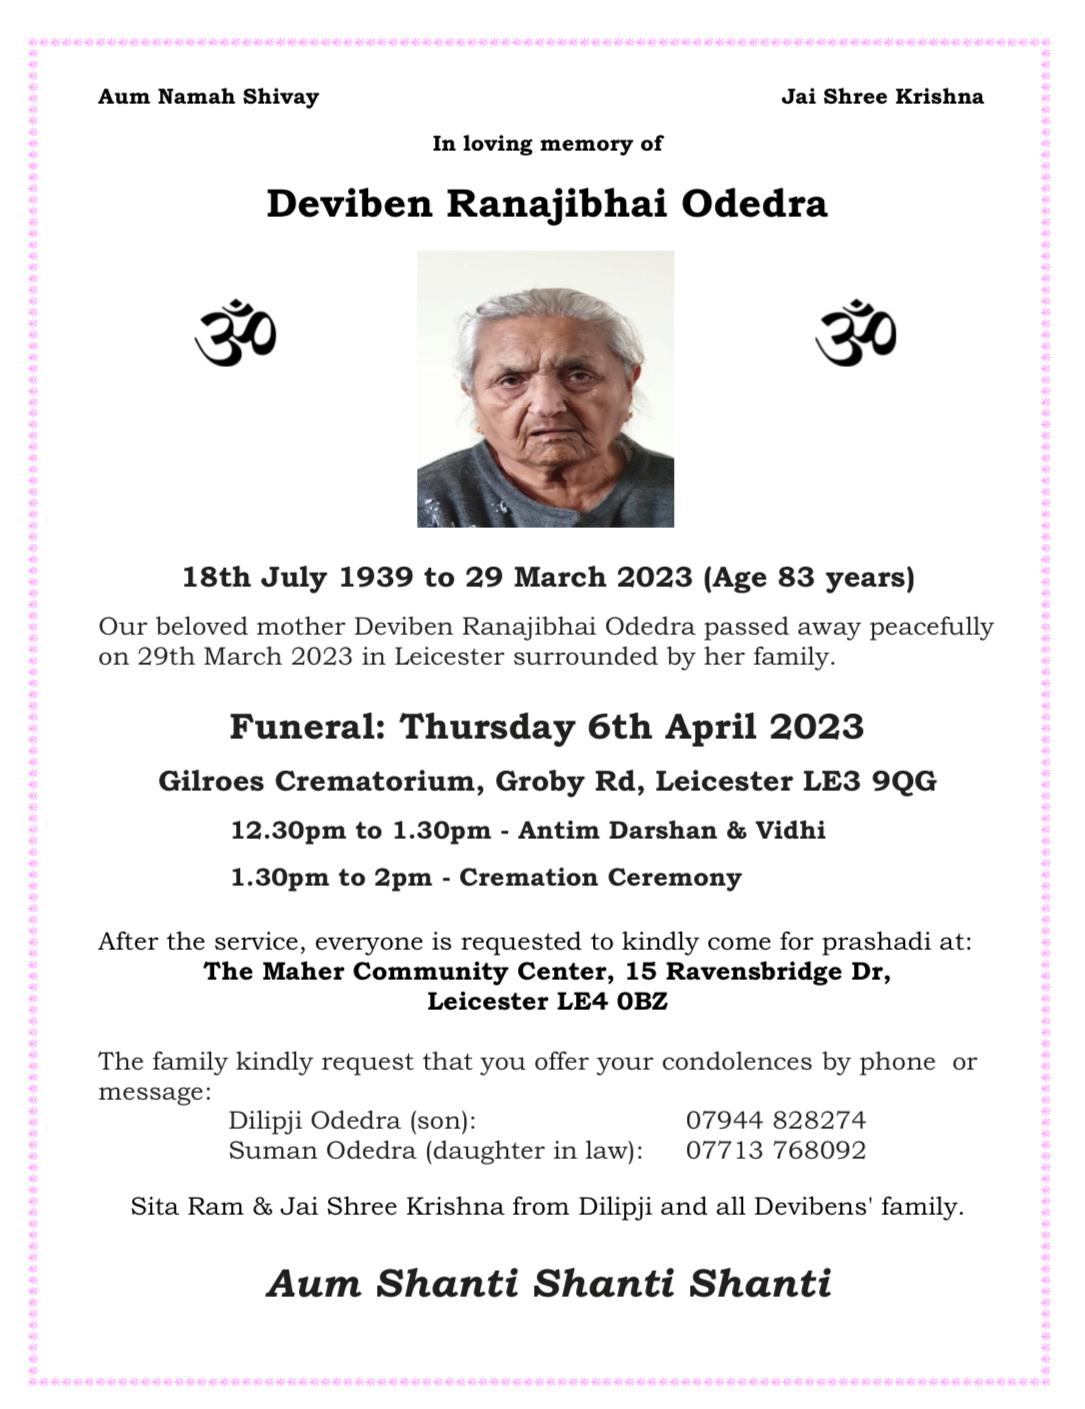 Deviben Ranajibhai Odedra Passed away